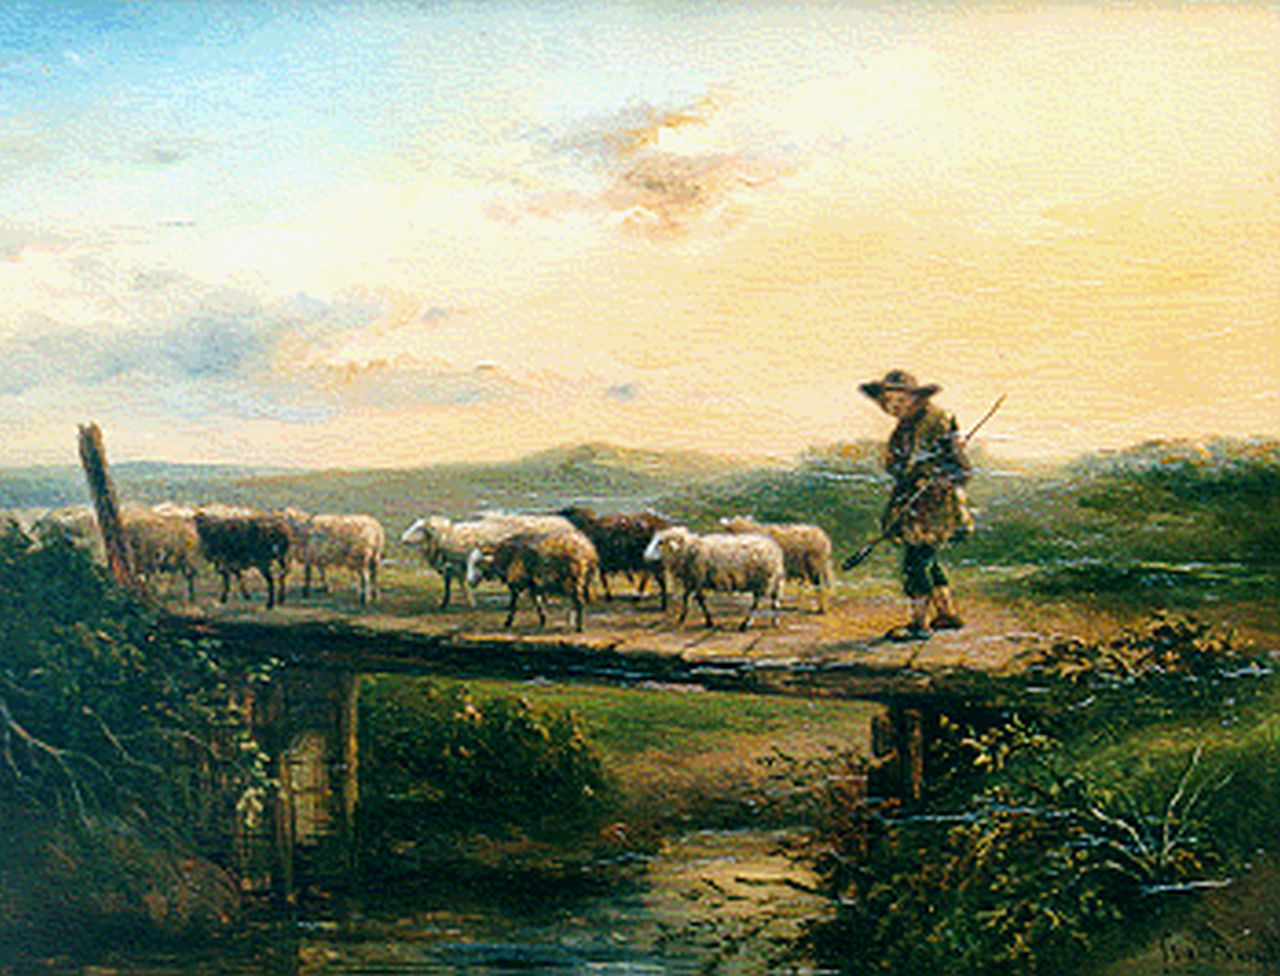 Berg S. van den | Simon van den Berg, Herder met kudde schapen, olieverf op paneel 24,0 x 31,3 cm, gesigneerd rechtsonder